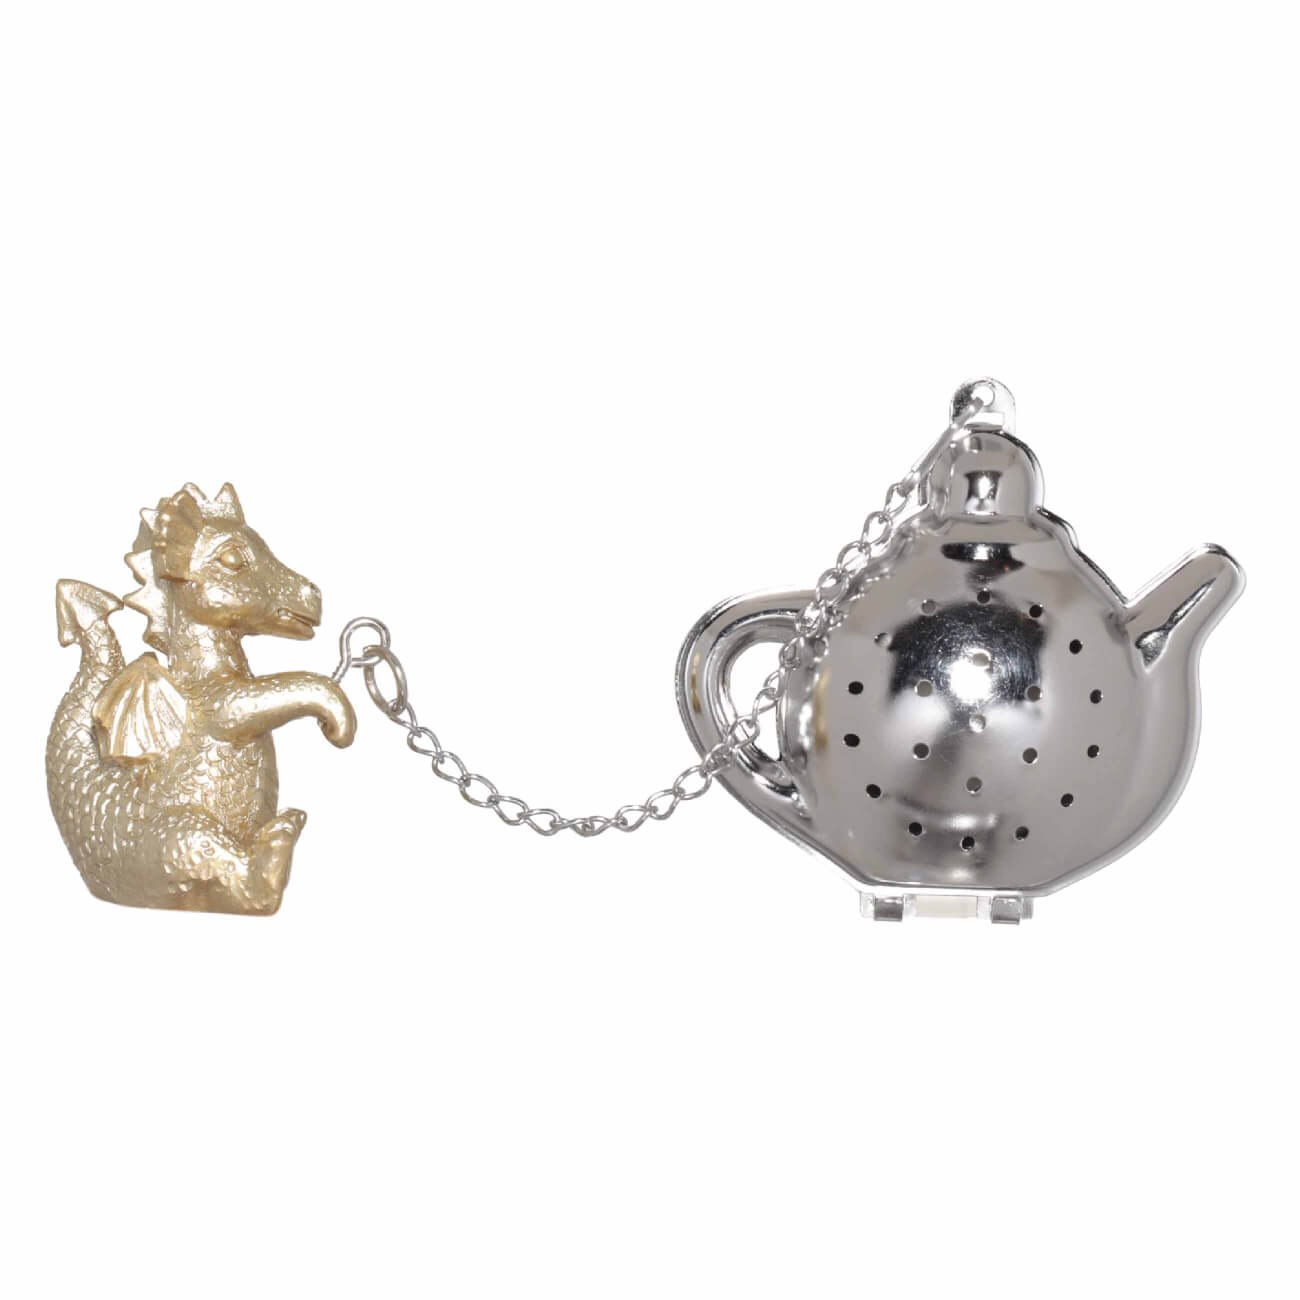 Сито для заваривания чая, 18 см, сталь/полирезин, золотисто-серебристое, Дракон, Dragon cute сувенир дракон таня гжель ной